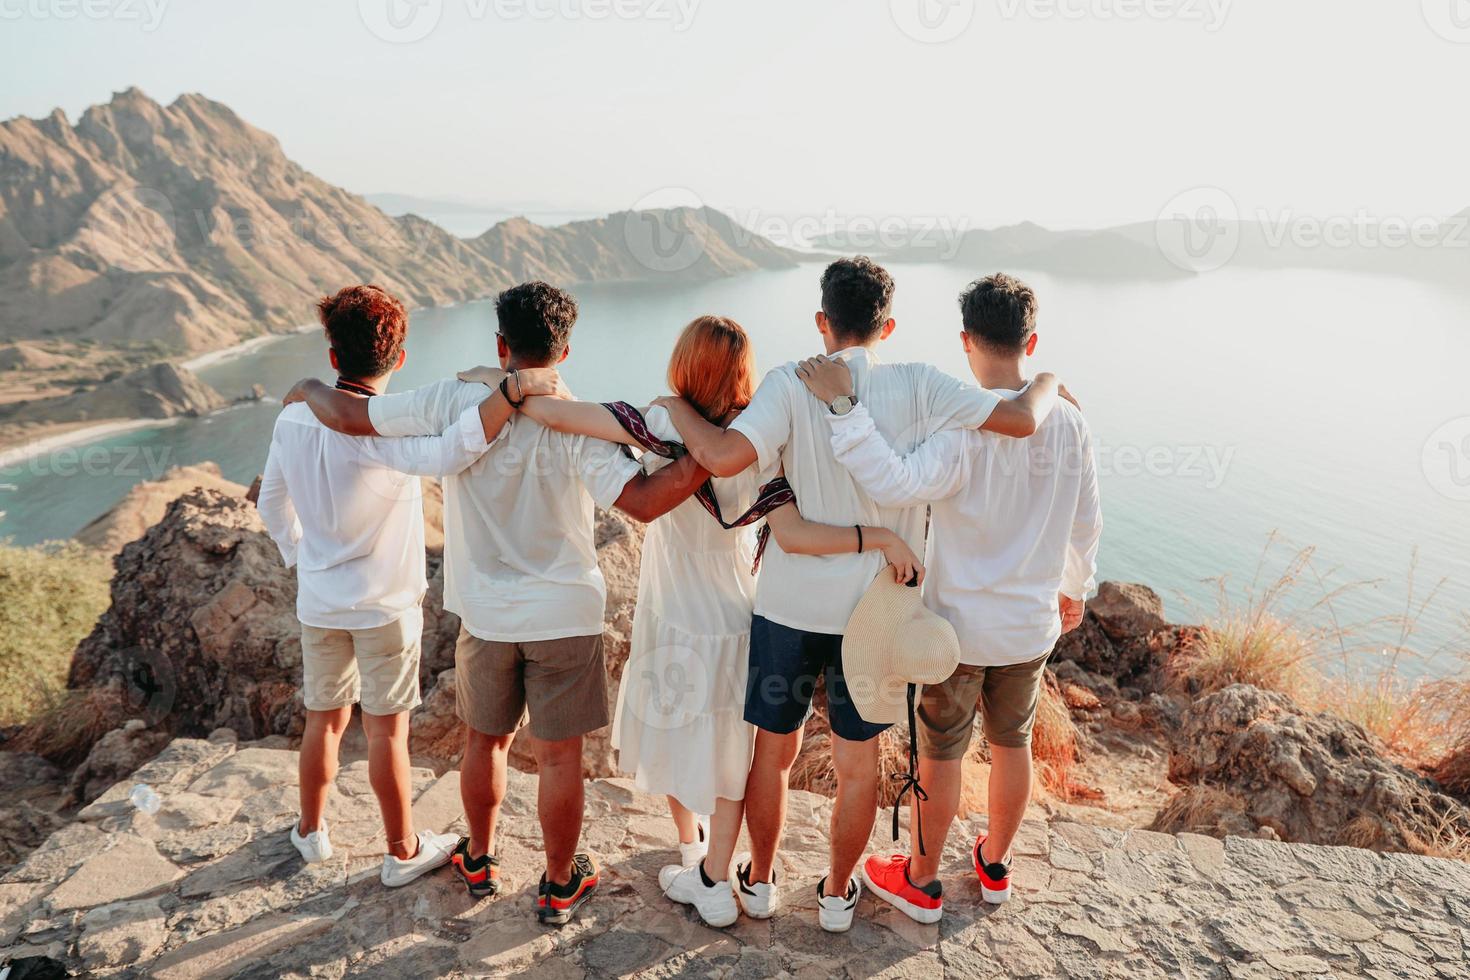 groep vrienden in wit overhemd en jurk omhelzen elkaar op de top van de heuvel terwijl ze naar het landschap kijken foto